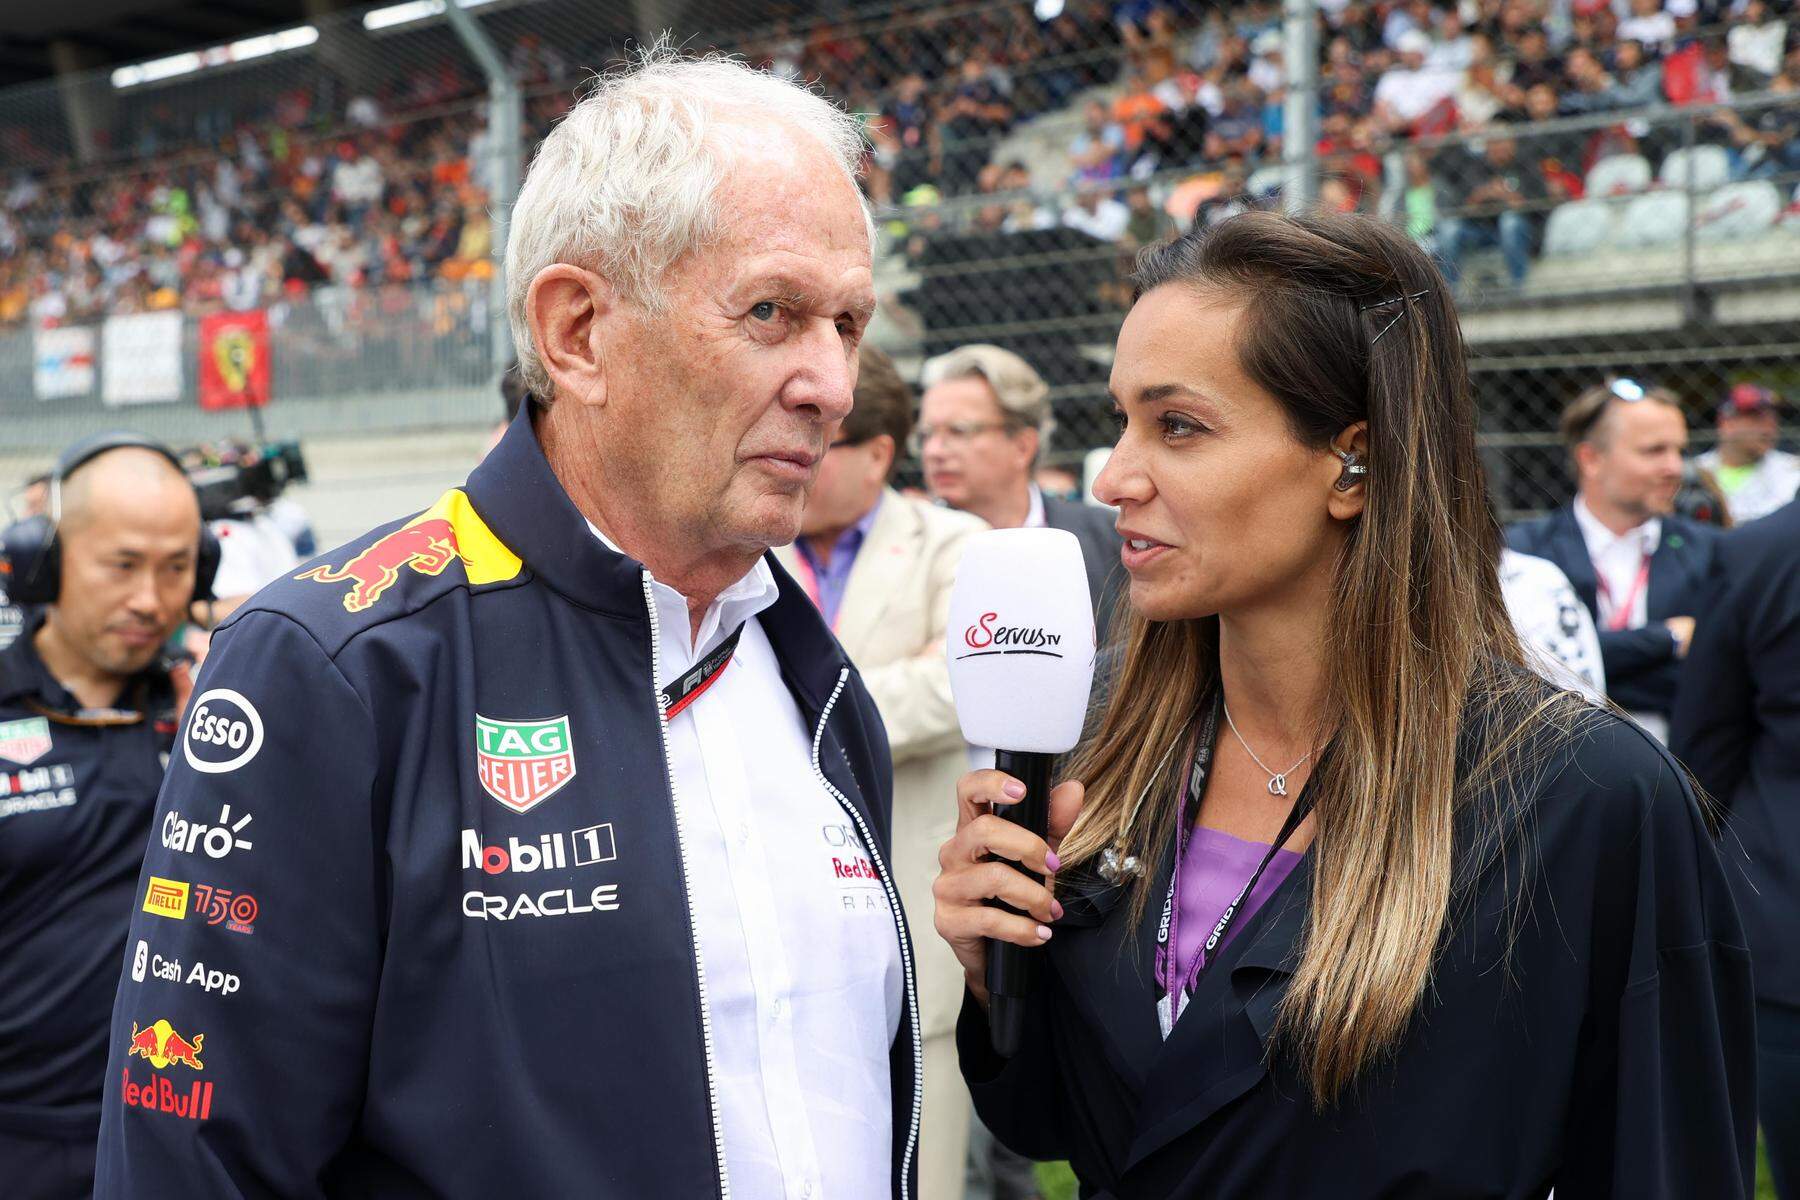 Verhandlungen mit ORF ServusTV sicherte sich TV-Rechte für Formel 1 bis 2026